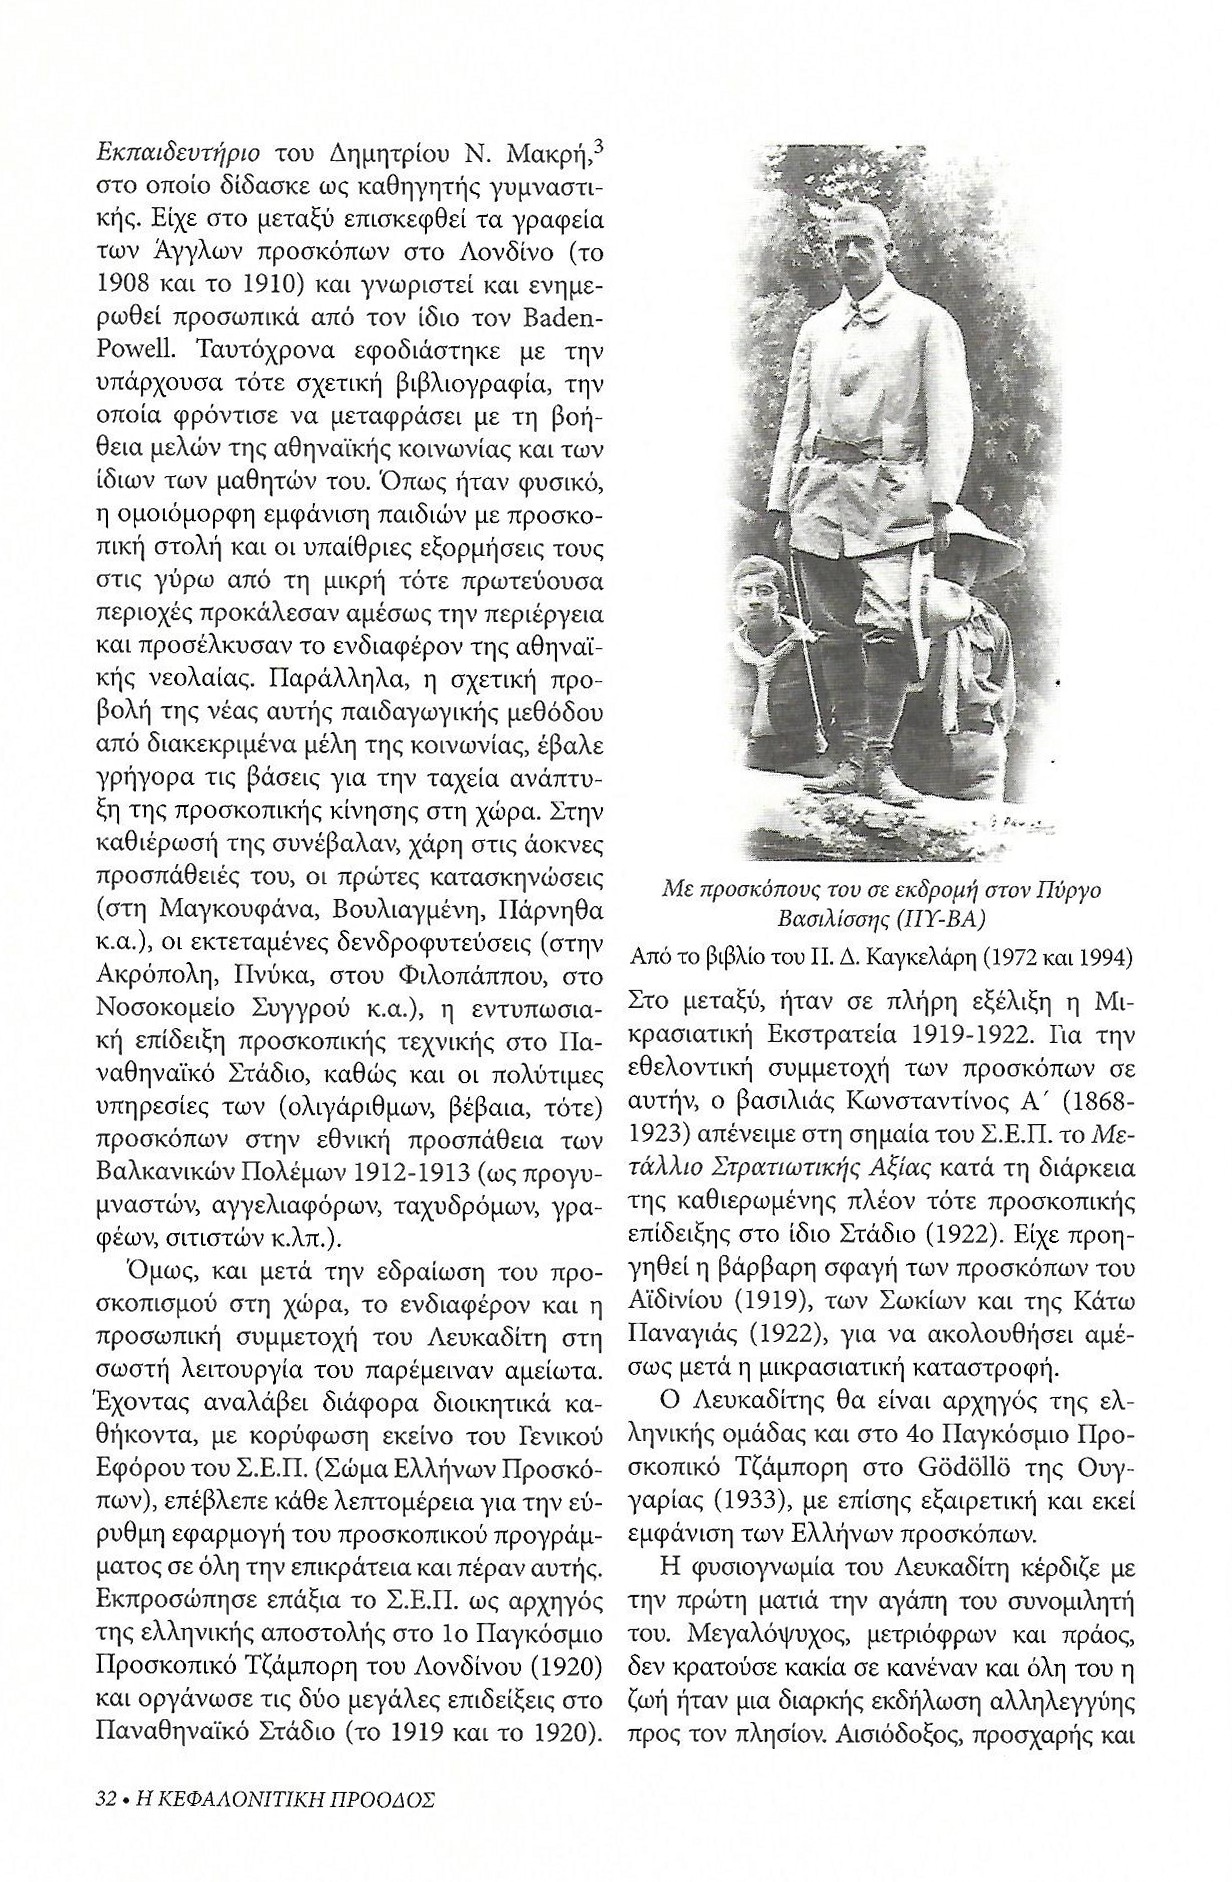 Αθανάσιος Λευκαδίτης, Κεφαλονίτικη Πρόοδος, Β-24, σελ. 32